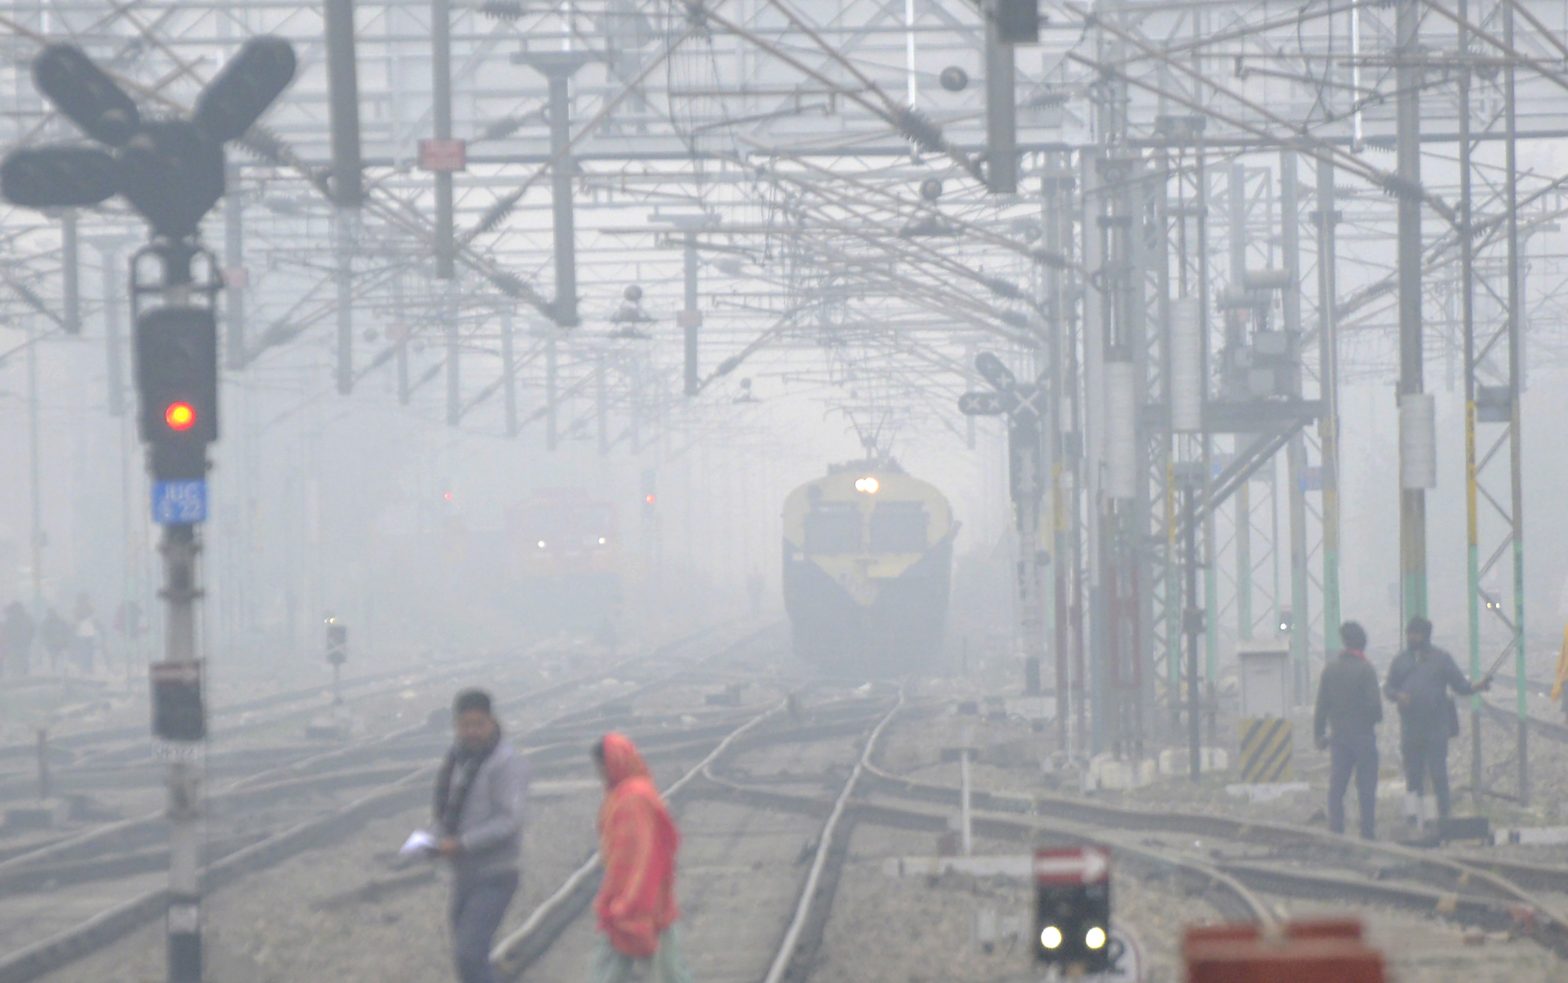 दिल्ली में न्यूनतम तापमान 6.6 डिग्री सेल्सियस, कोहरे से रेल यातायात प्रभावित